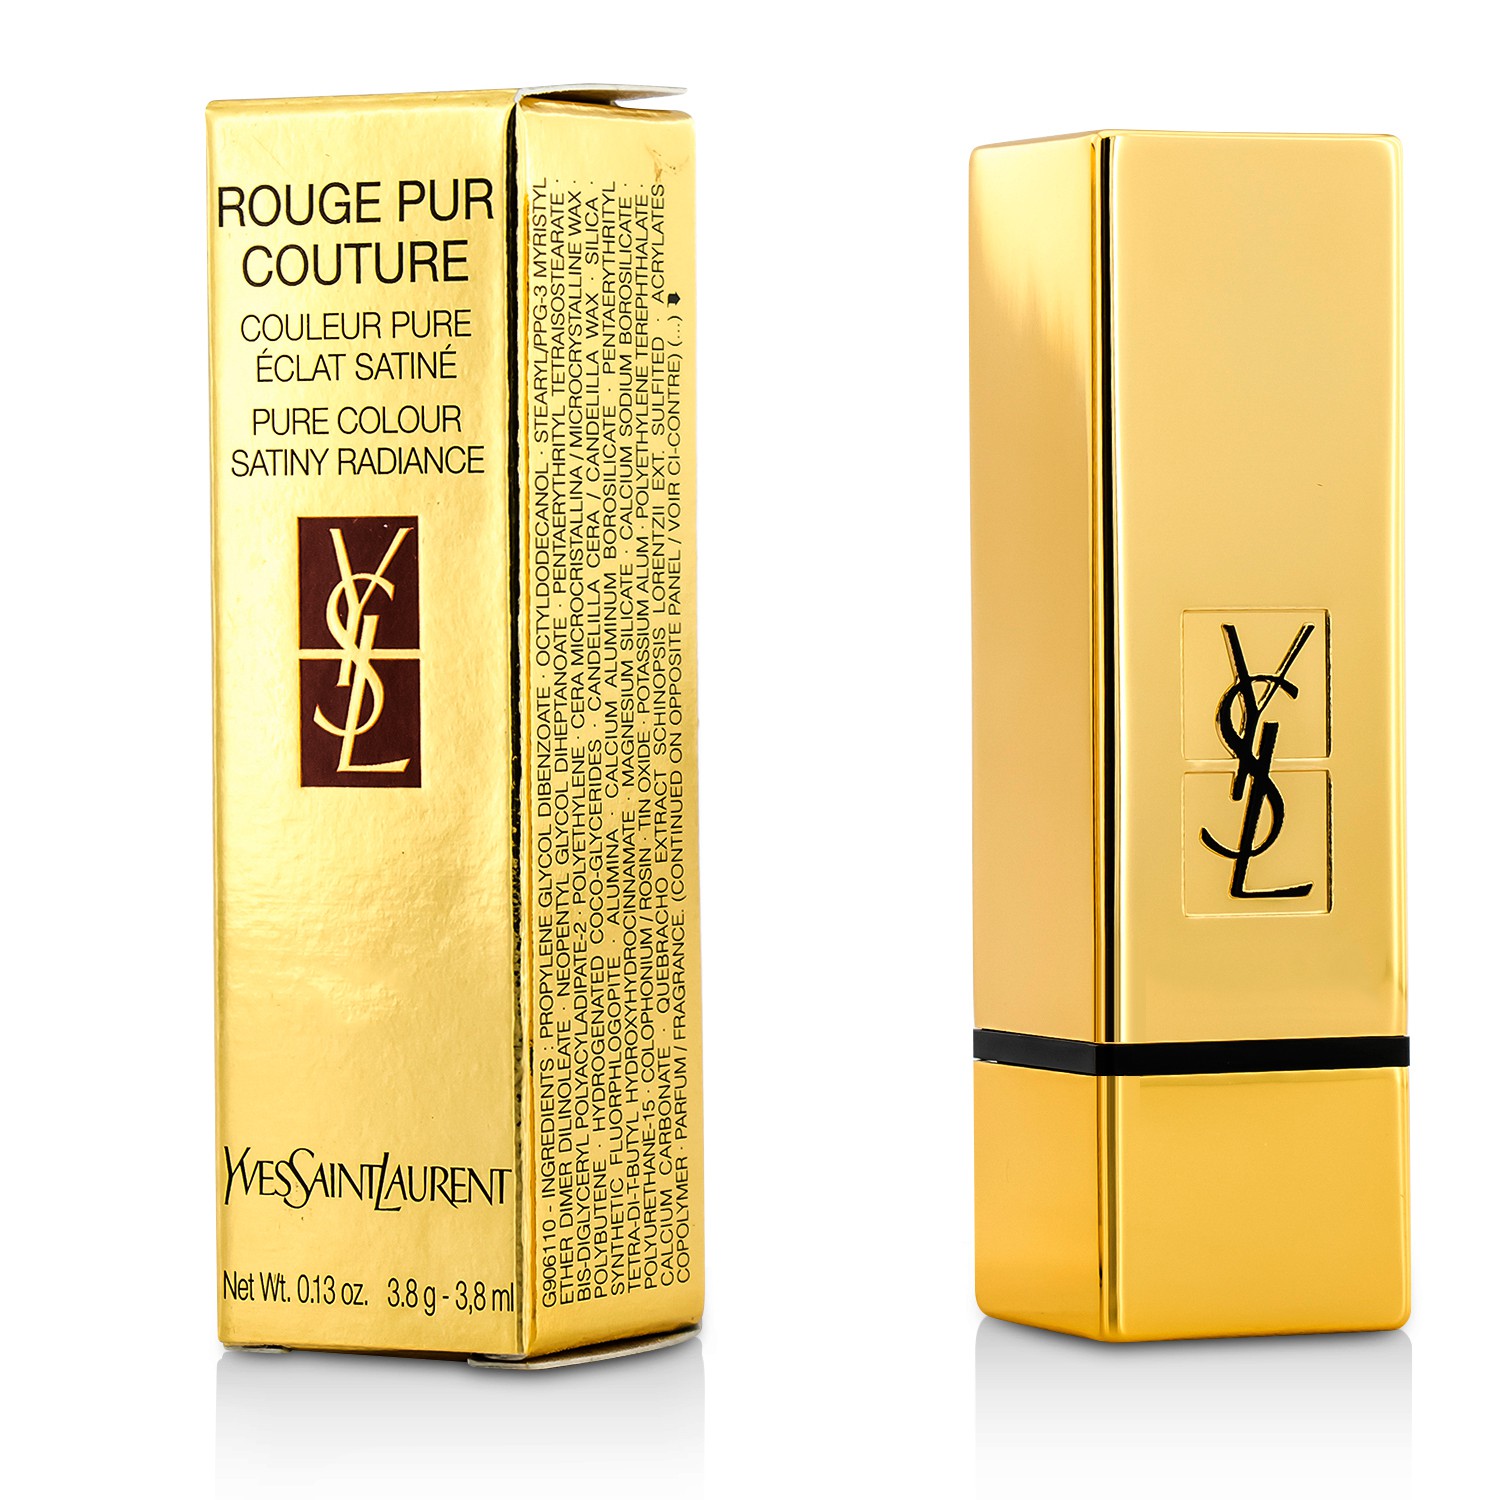 Rouge Pur Couture - # 39 Pourpre Divin Yves Saint Laurent Image